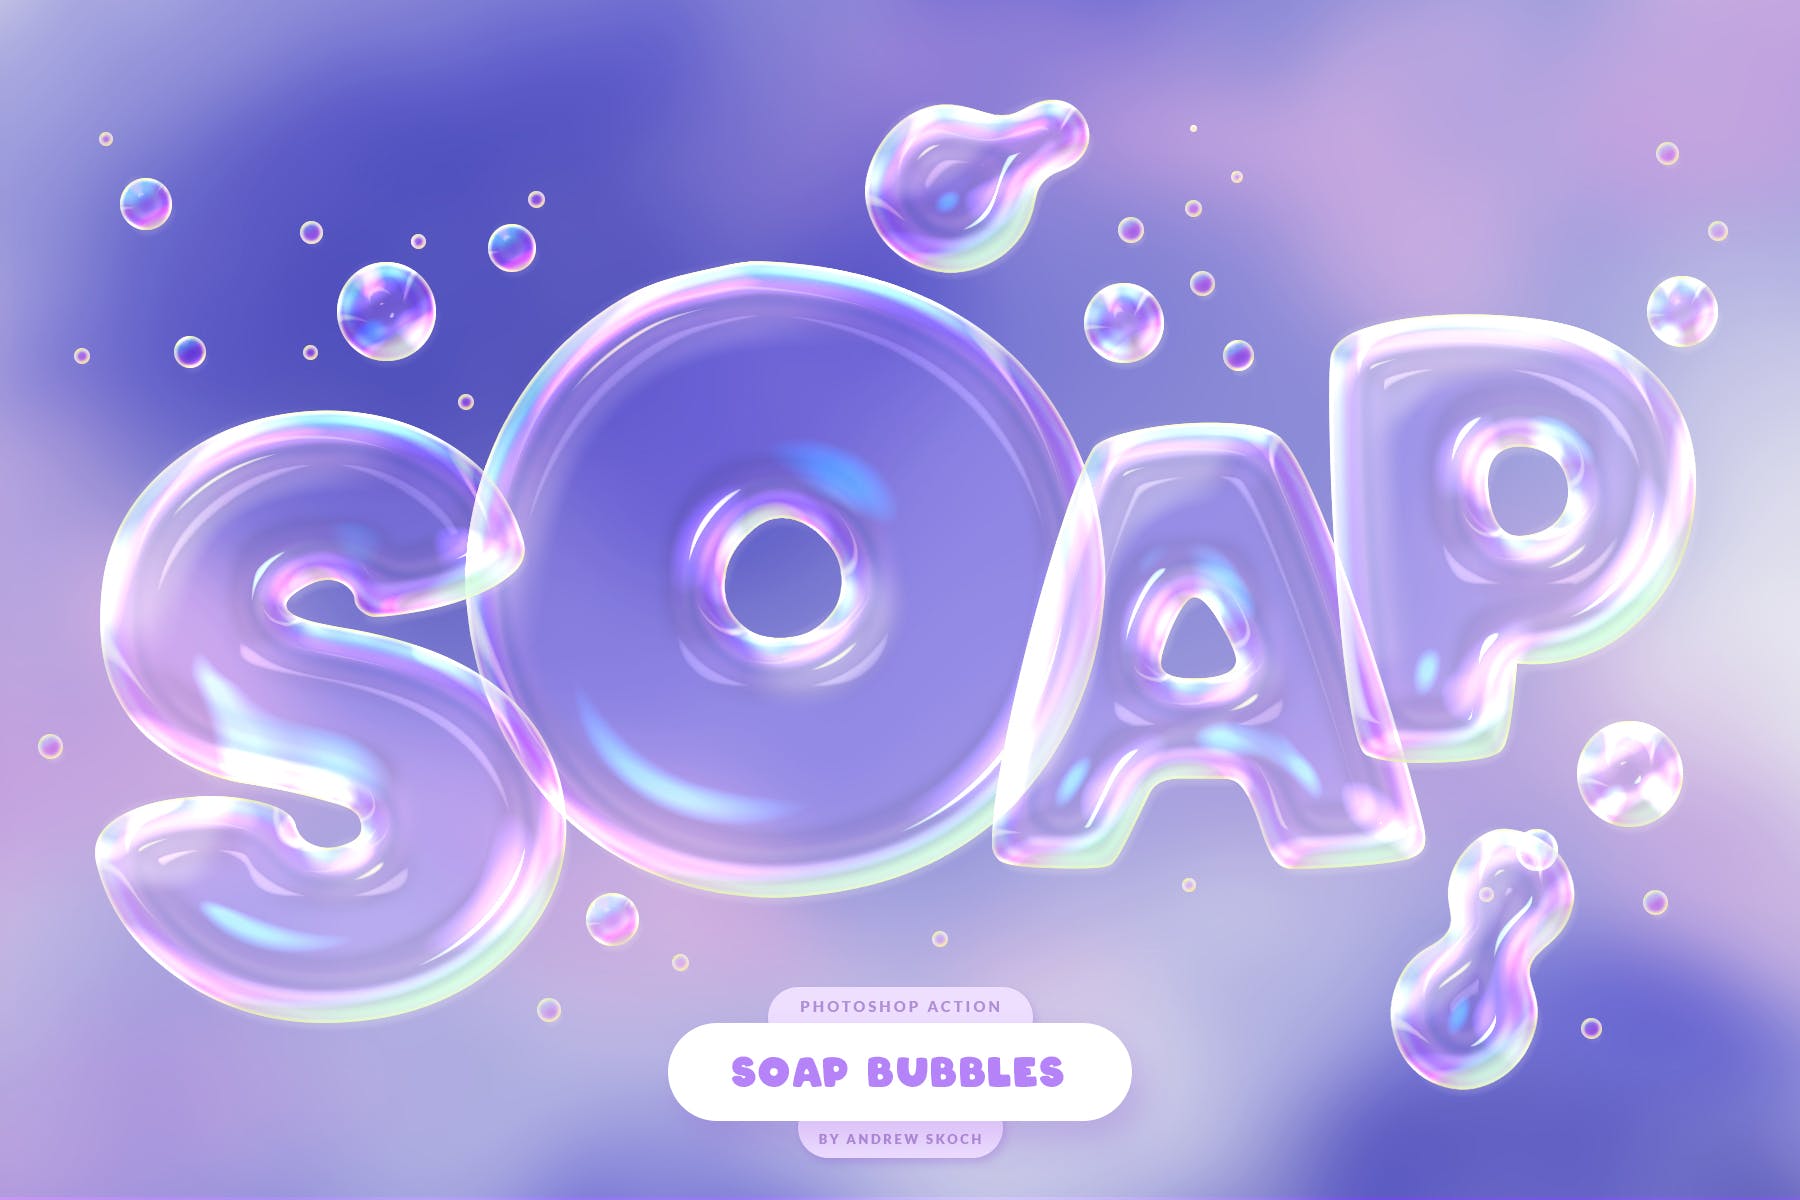 肥皂泡文字特效第一素材精选PS动作 Soap Bubbles Photoshop Action插图(3)